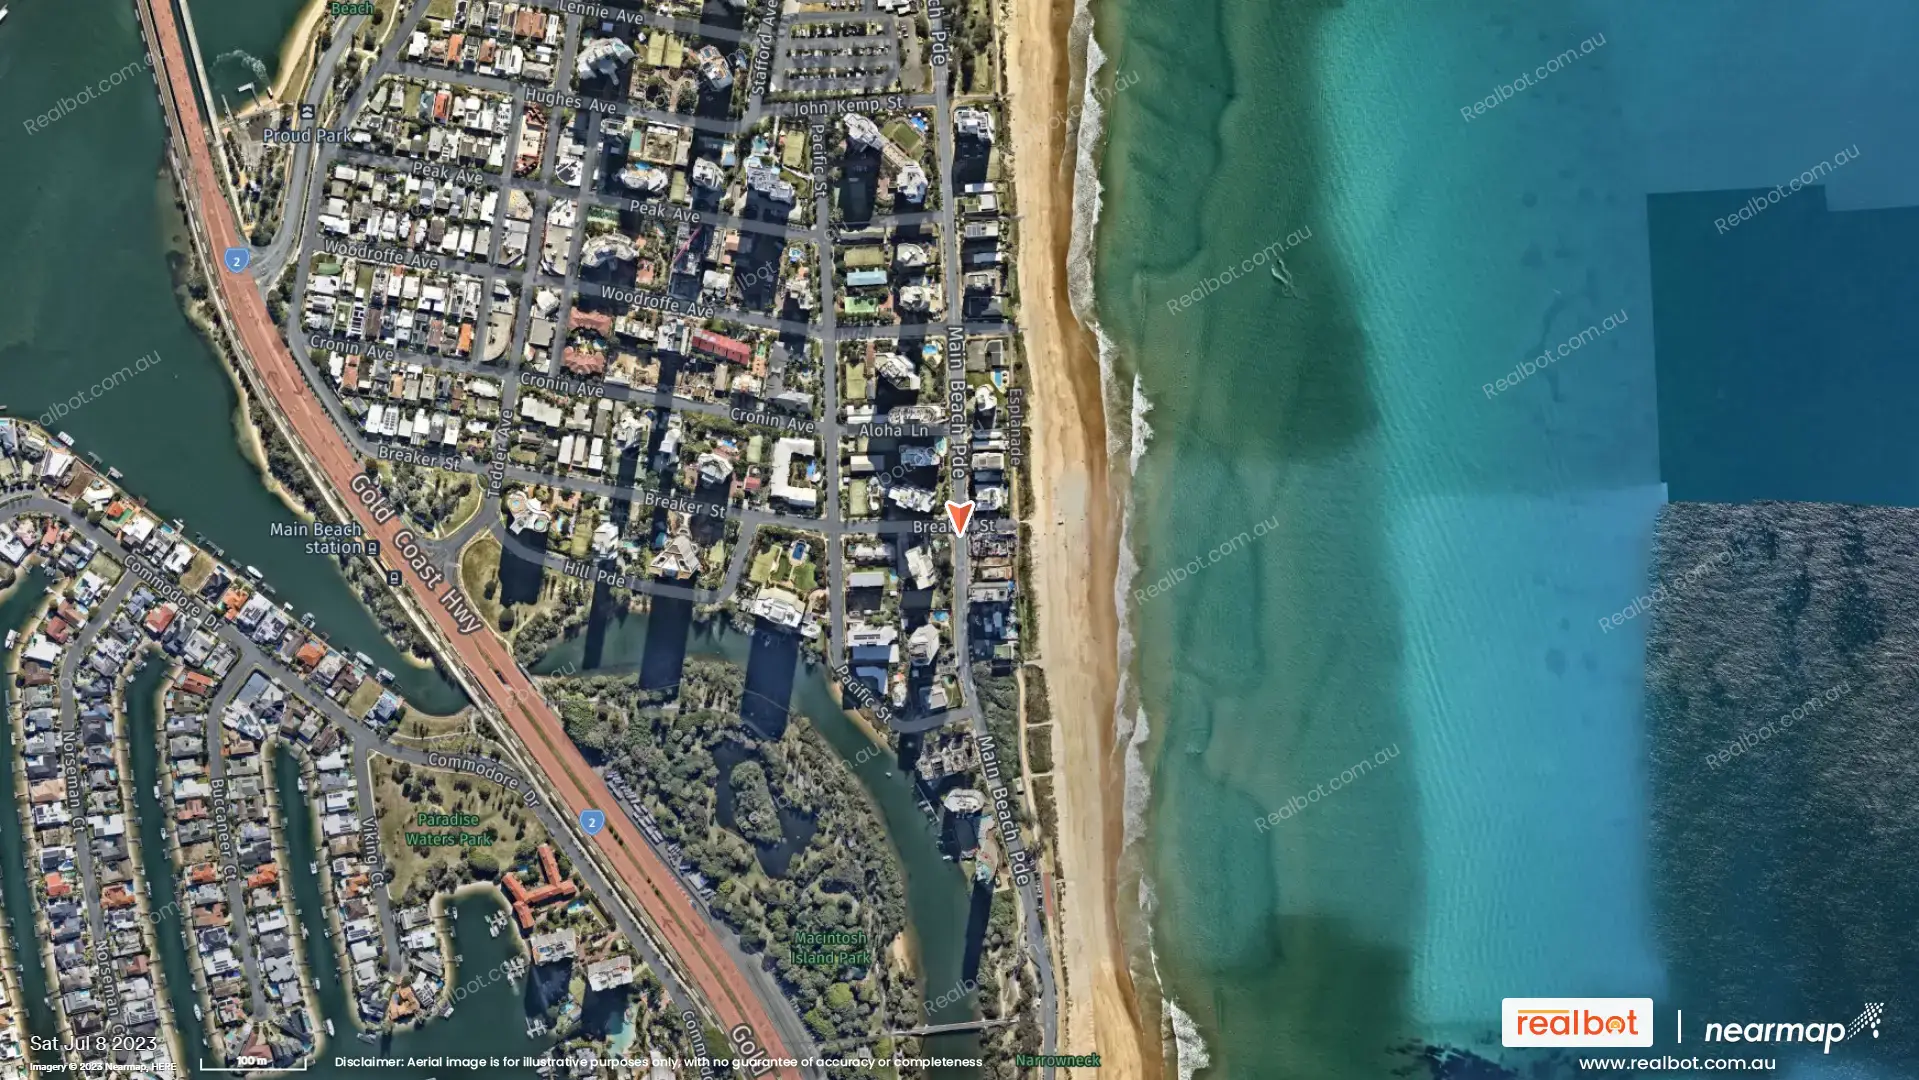 Main Beach QLD 4217  